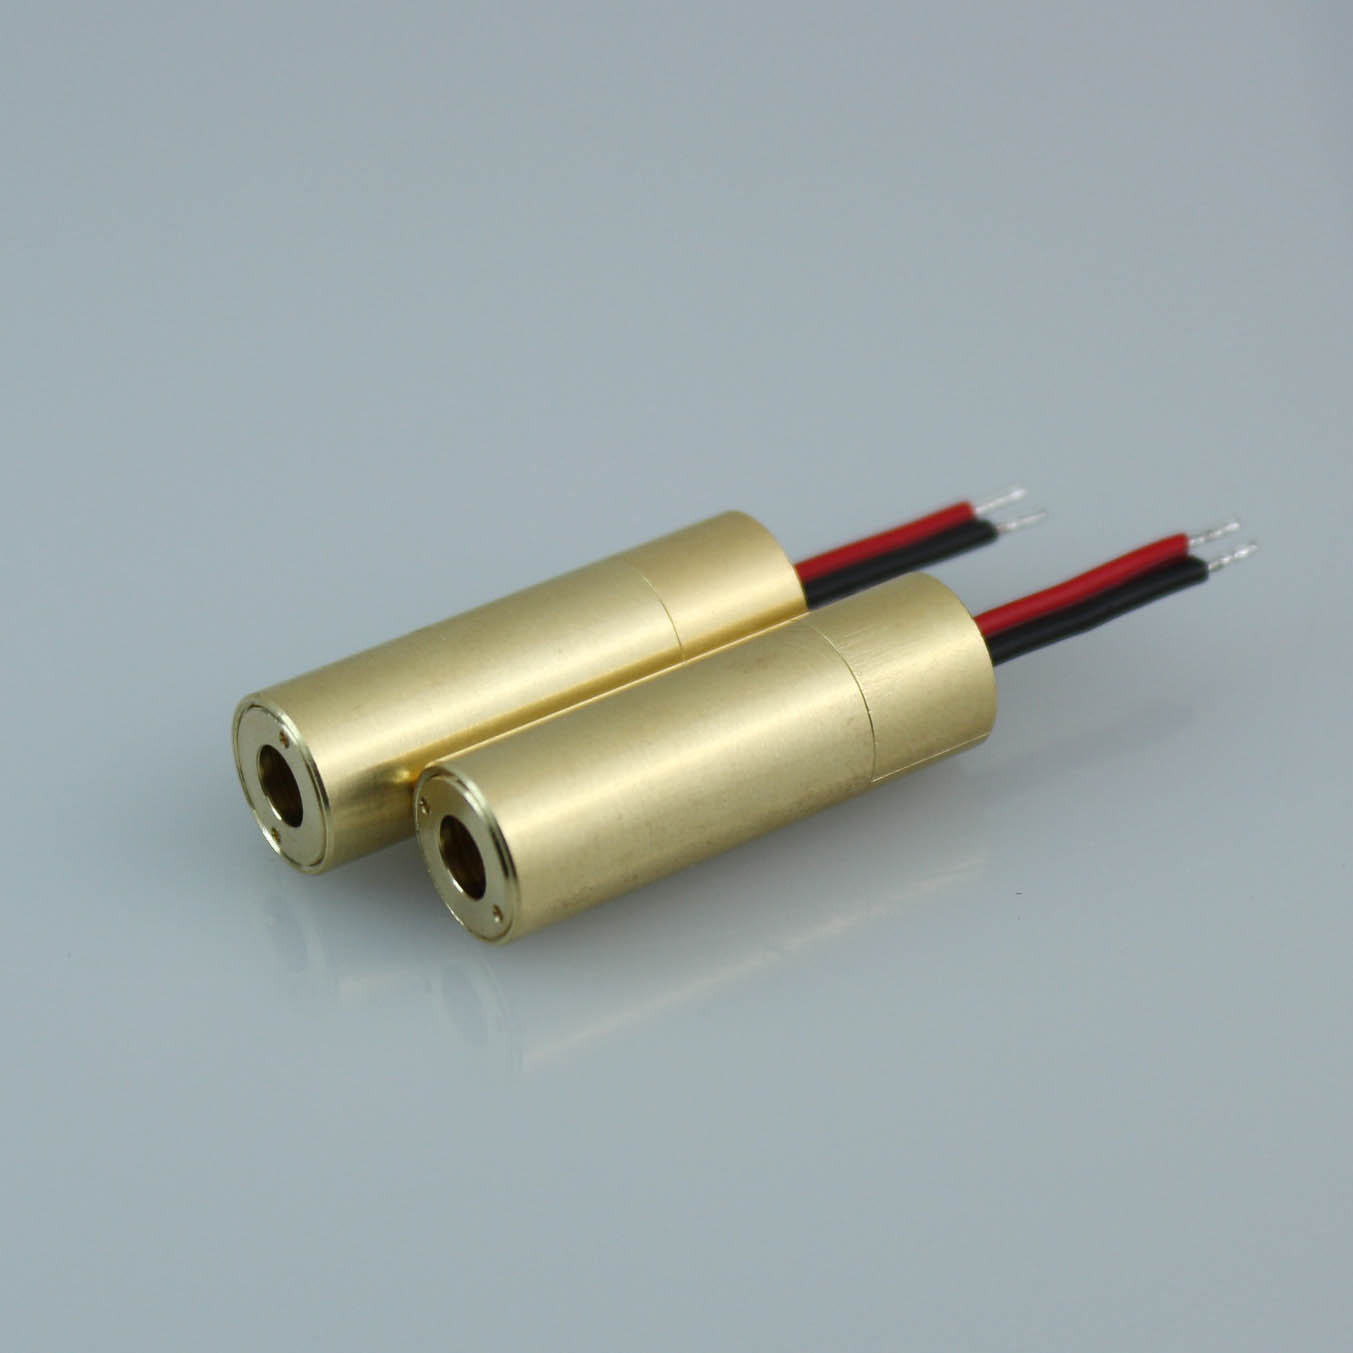 Modules de diode de diode laser rouge de puissance inférieure 650nm 5mw